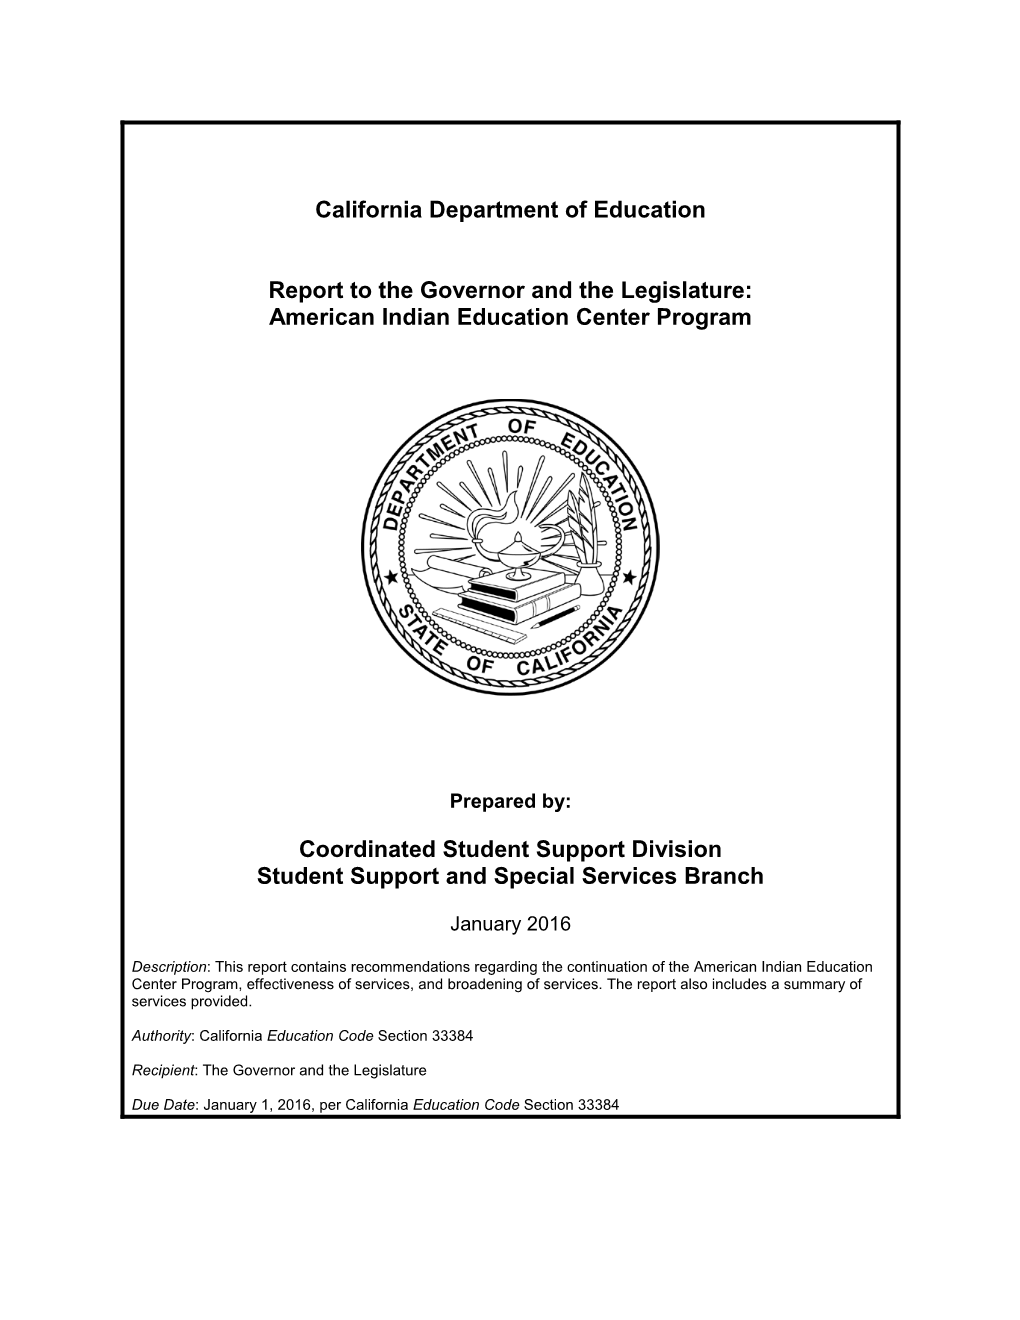 Legislative Report: AIEC (CA Dept of Education)